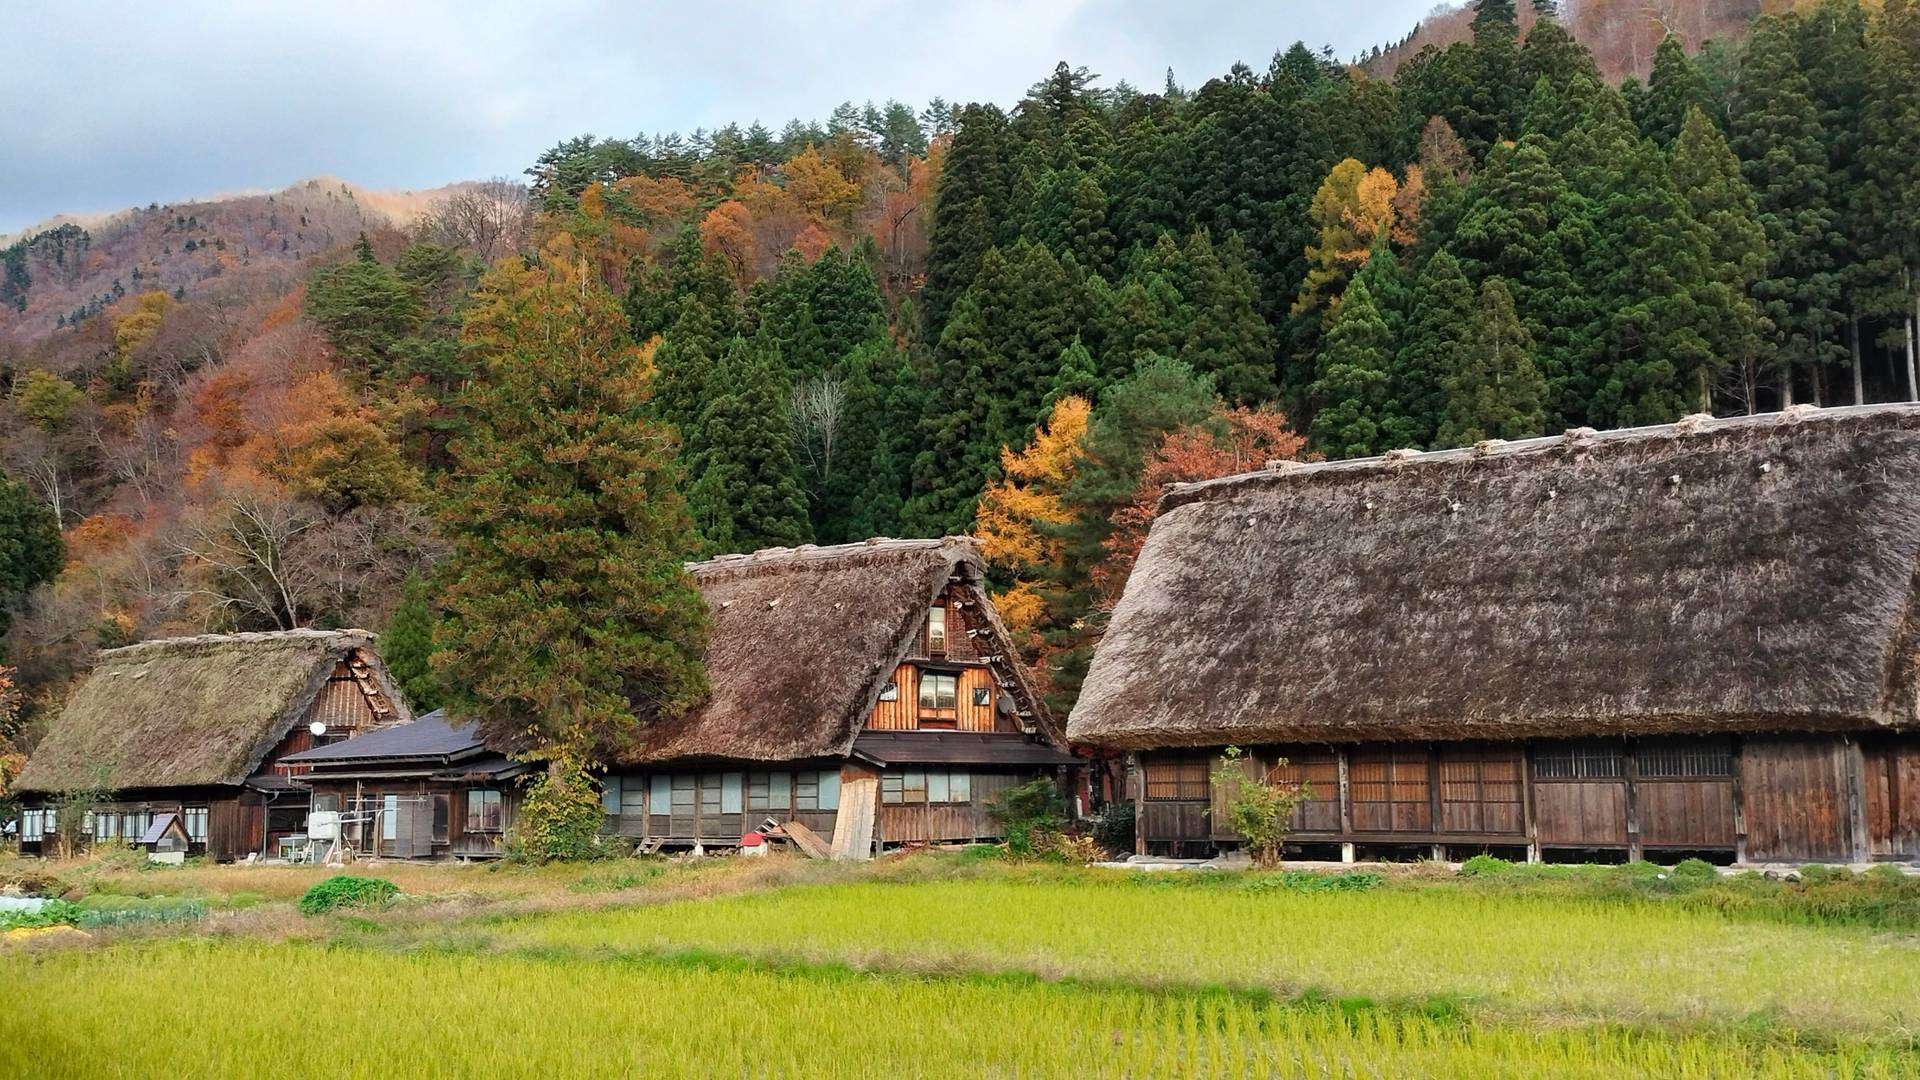 Techos de paja y viviendas tradicionales alpinas